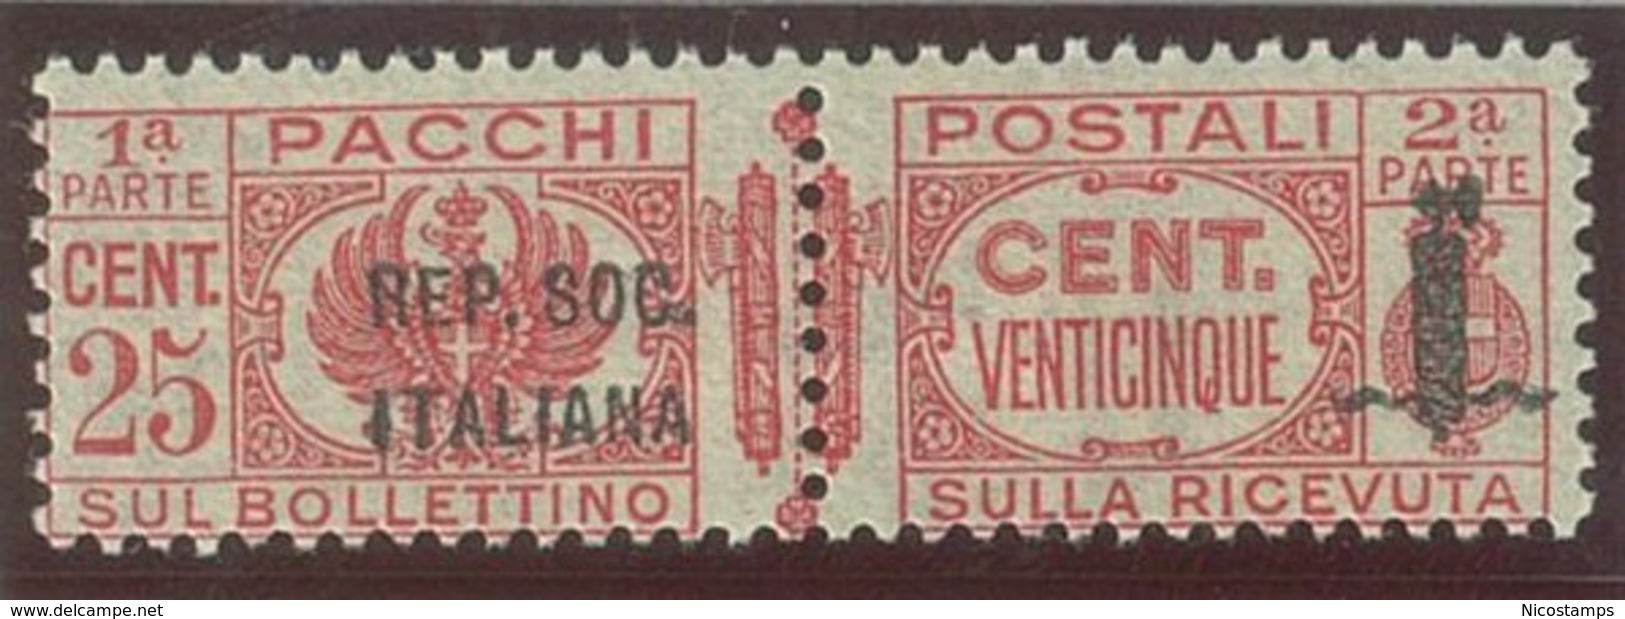 ITALIA REPUBBLICA SOCIALE ITALIANA (R.S.I.) SASS. P.P. 38a  NUOVO - Postal Parcels